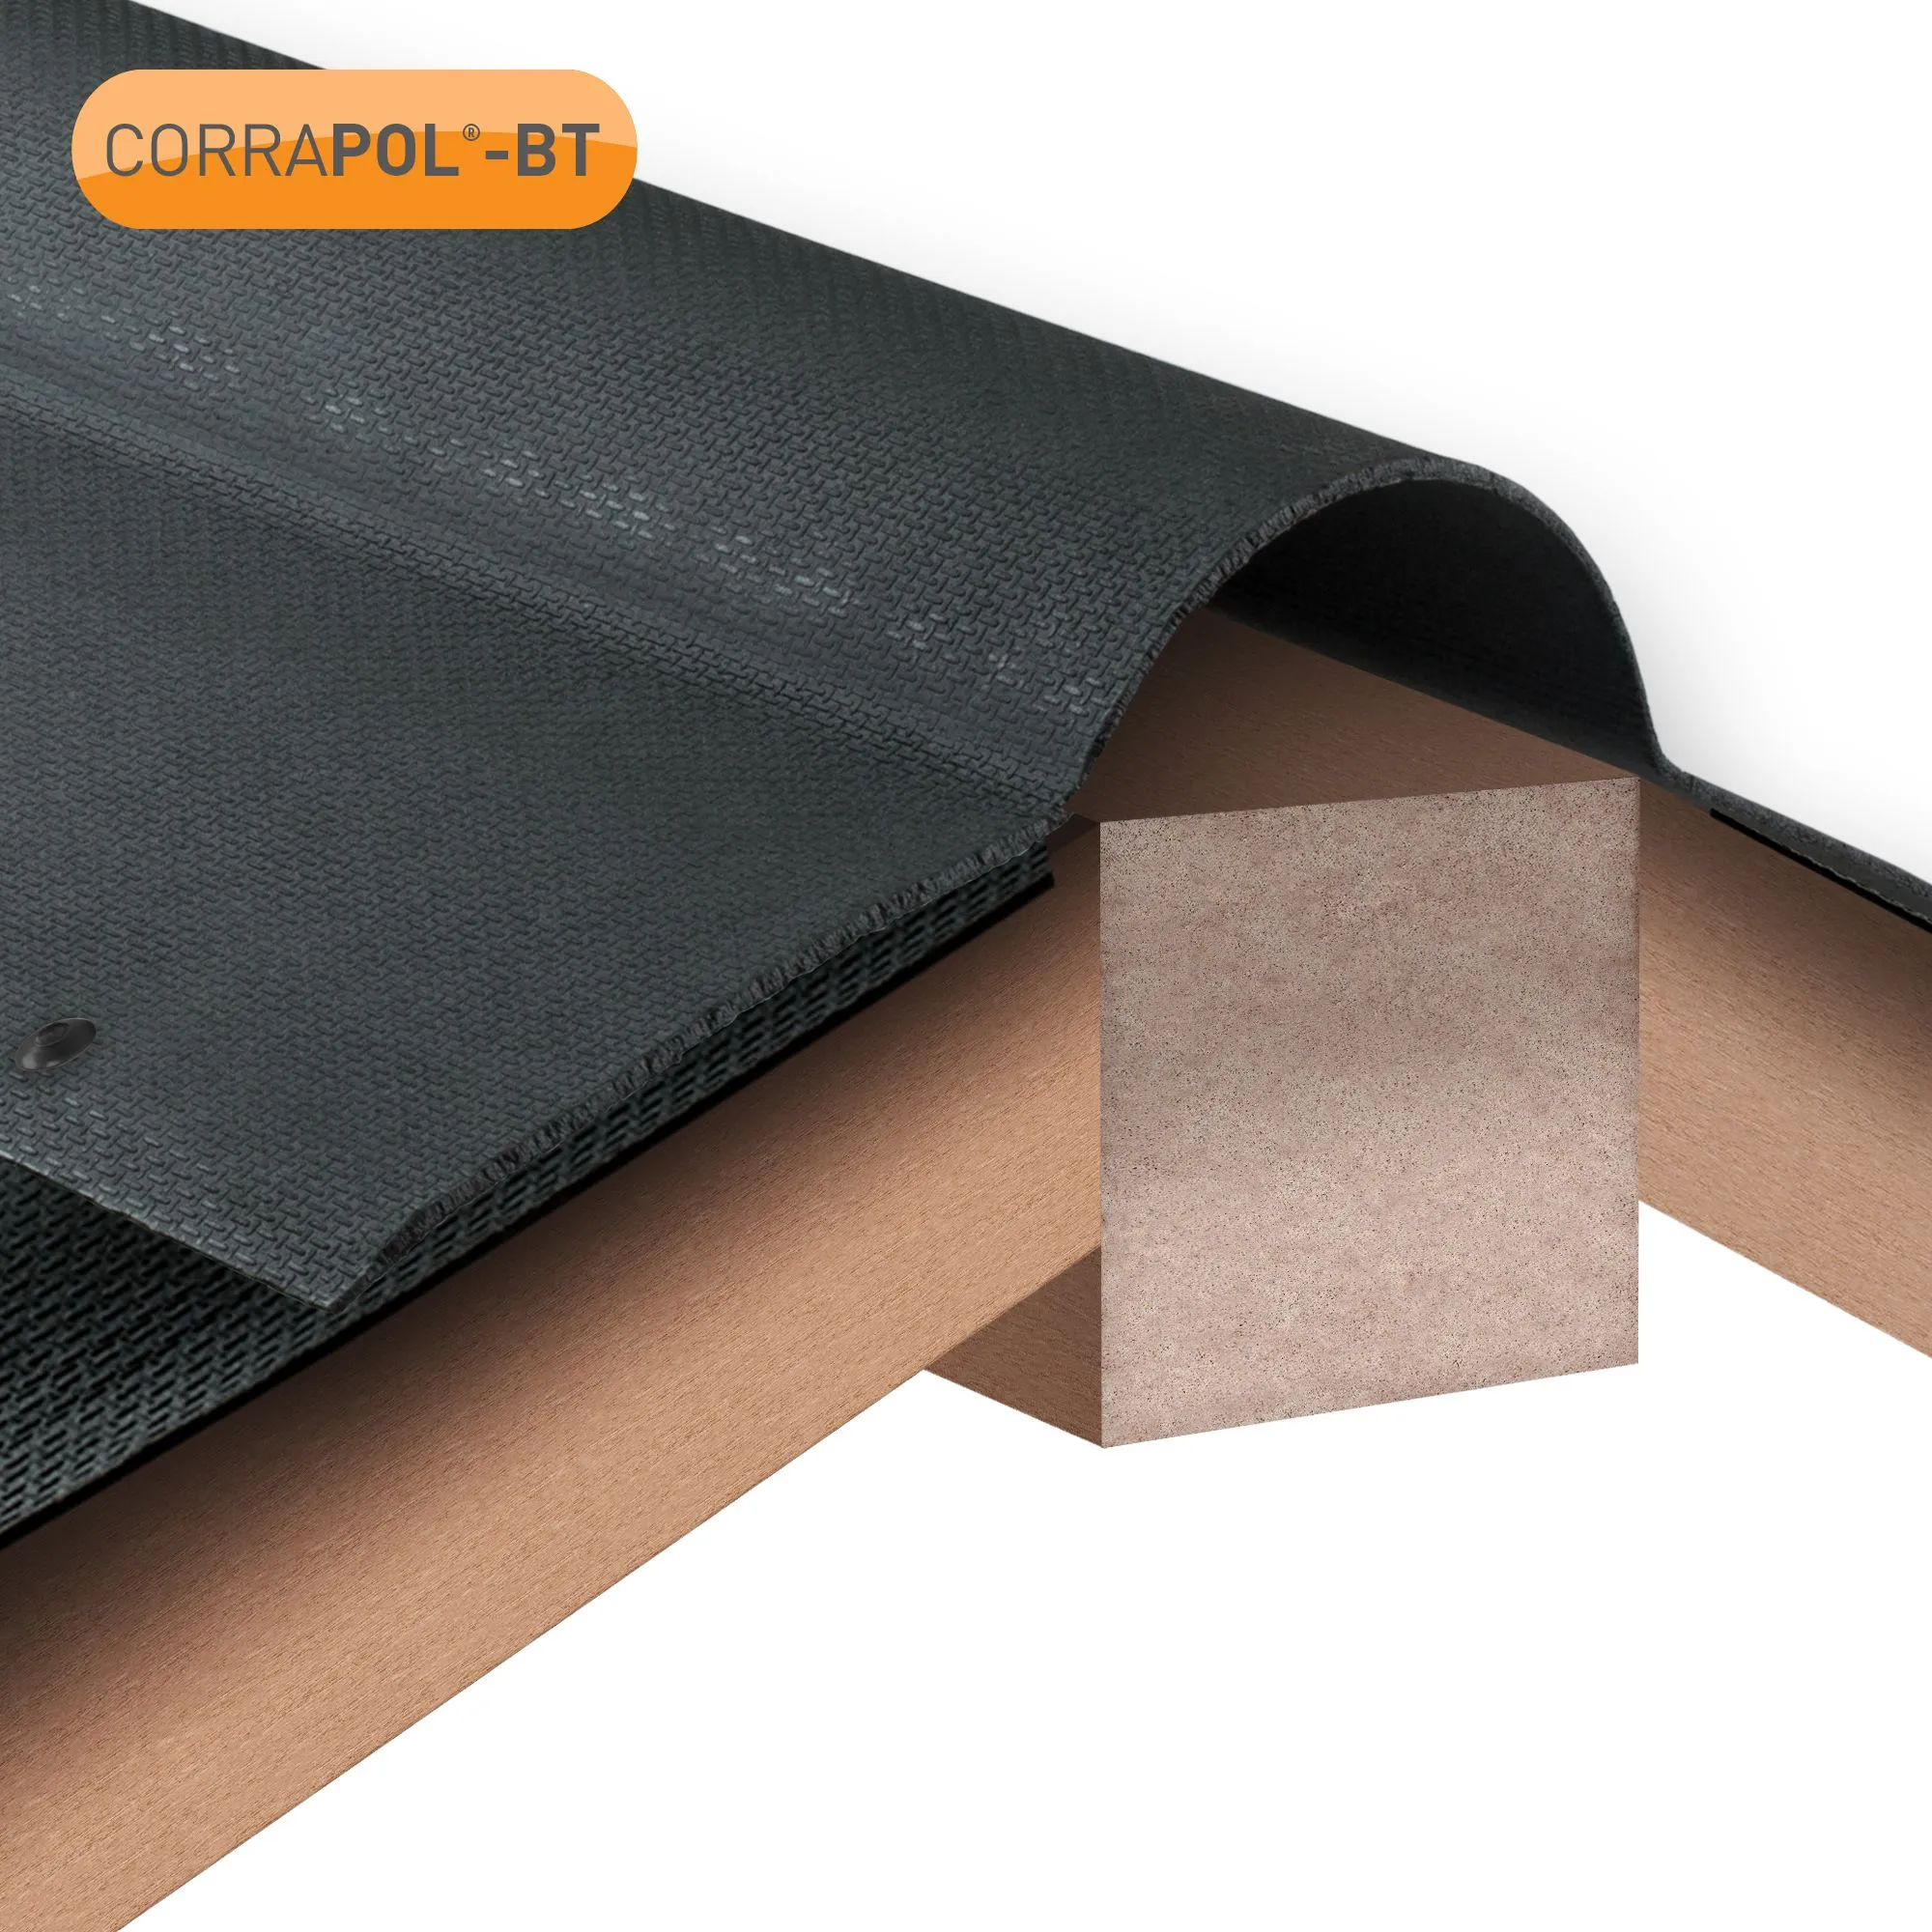 Corrapol-BT Black Bitumen Ridge piece (L)950mm (W)420mm